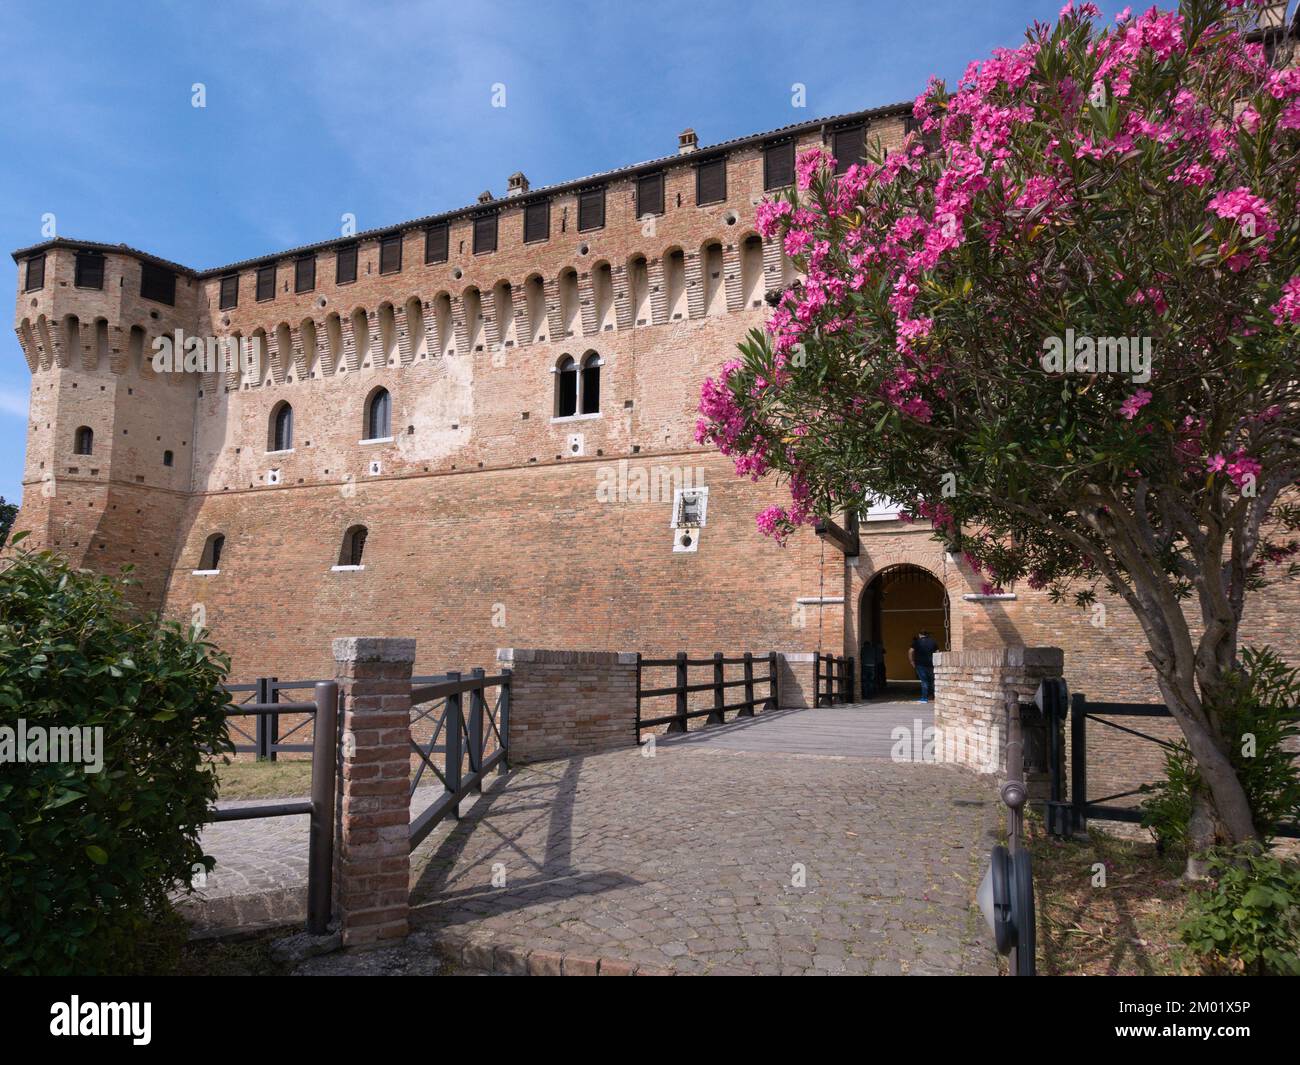 Gradara, Italie - 16 juin 2017 : entrée principale du château de Gradara. Le château de Gradara date de 11th à 15th siècles Banque D'Images